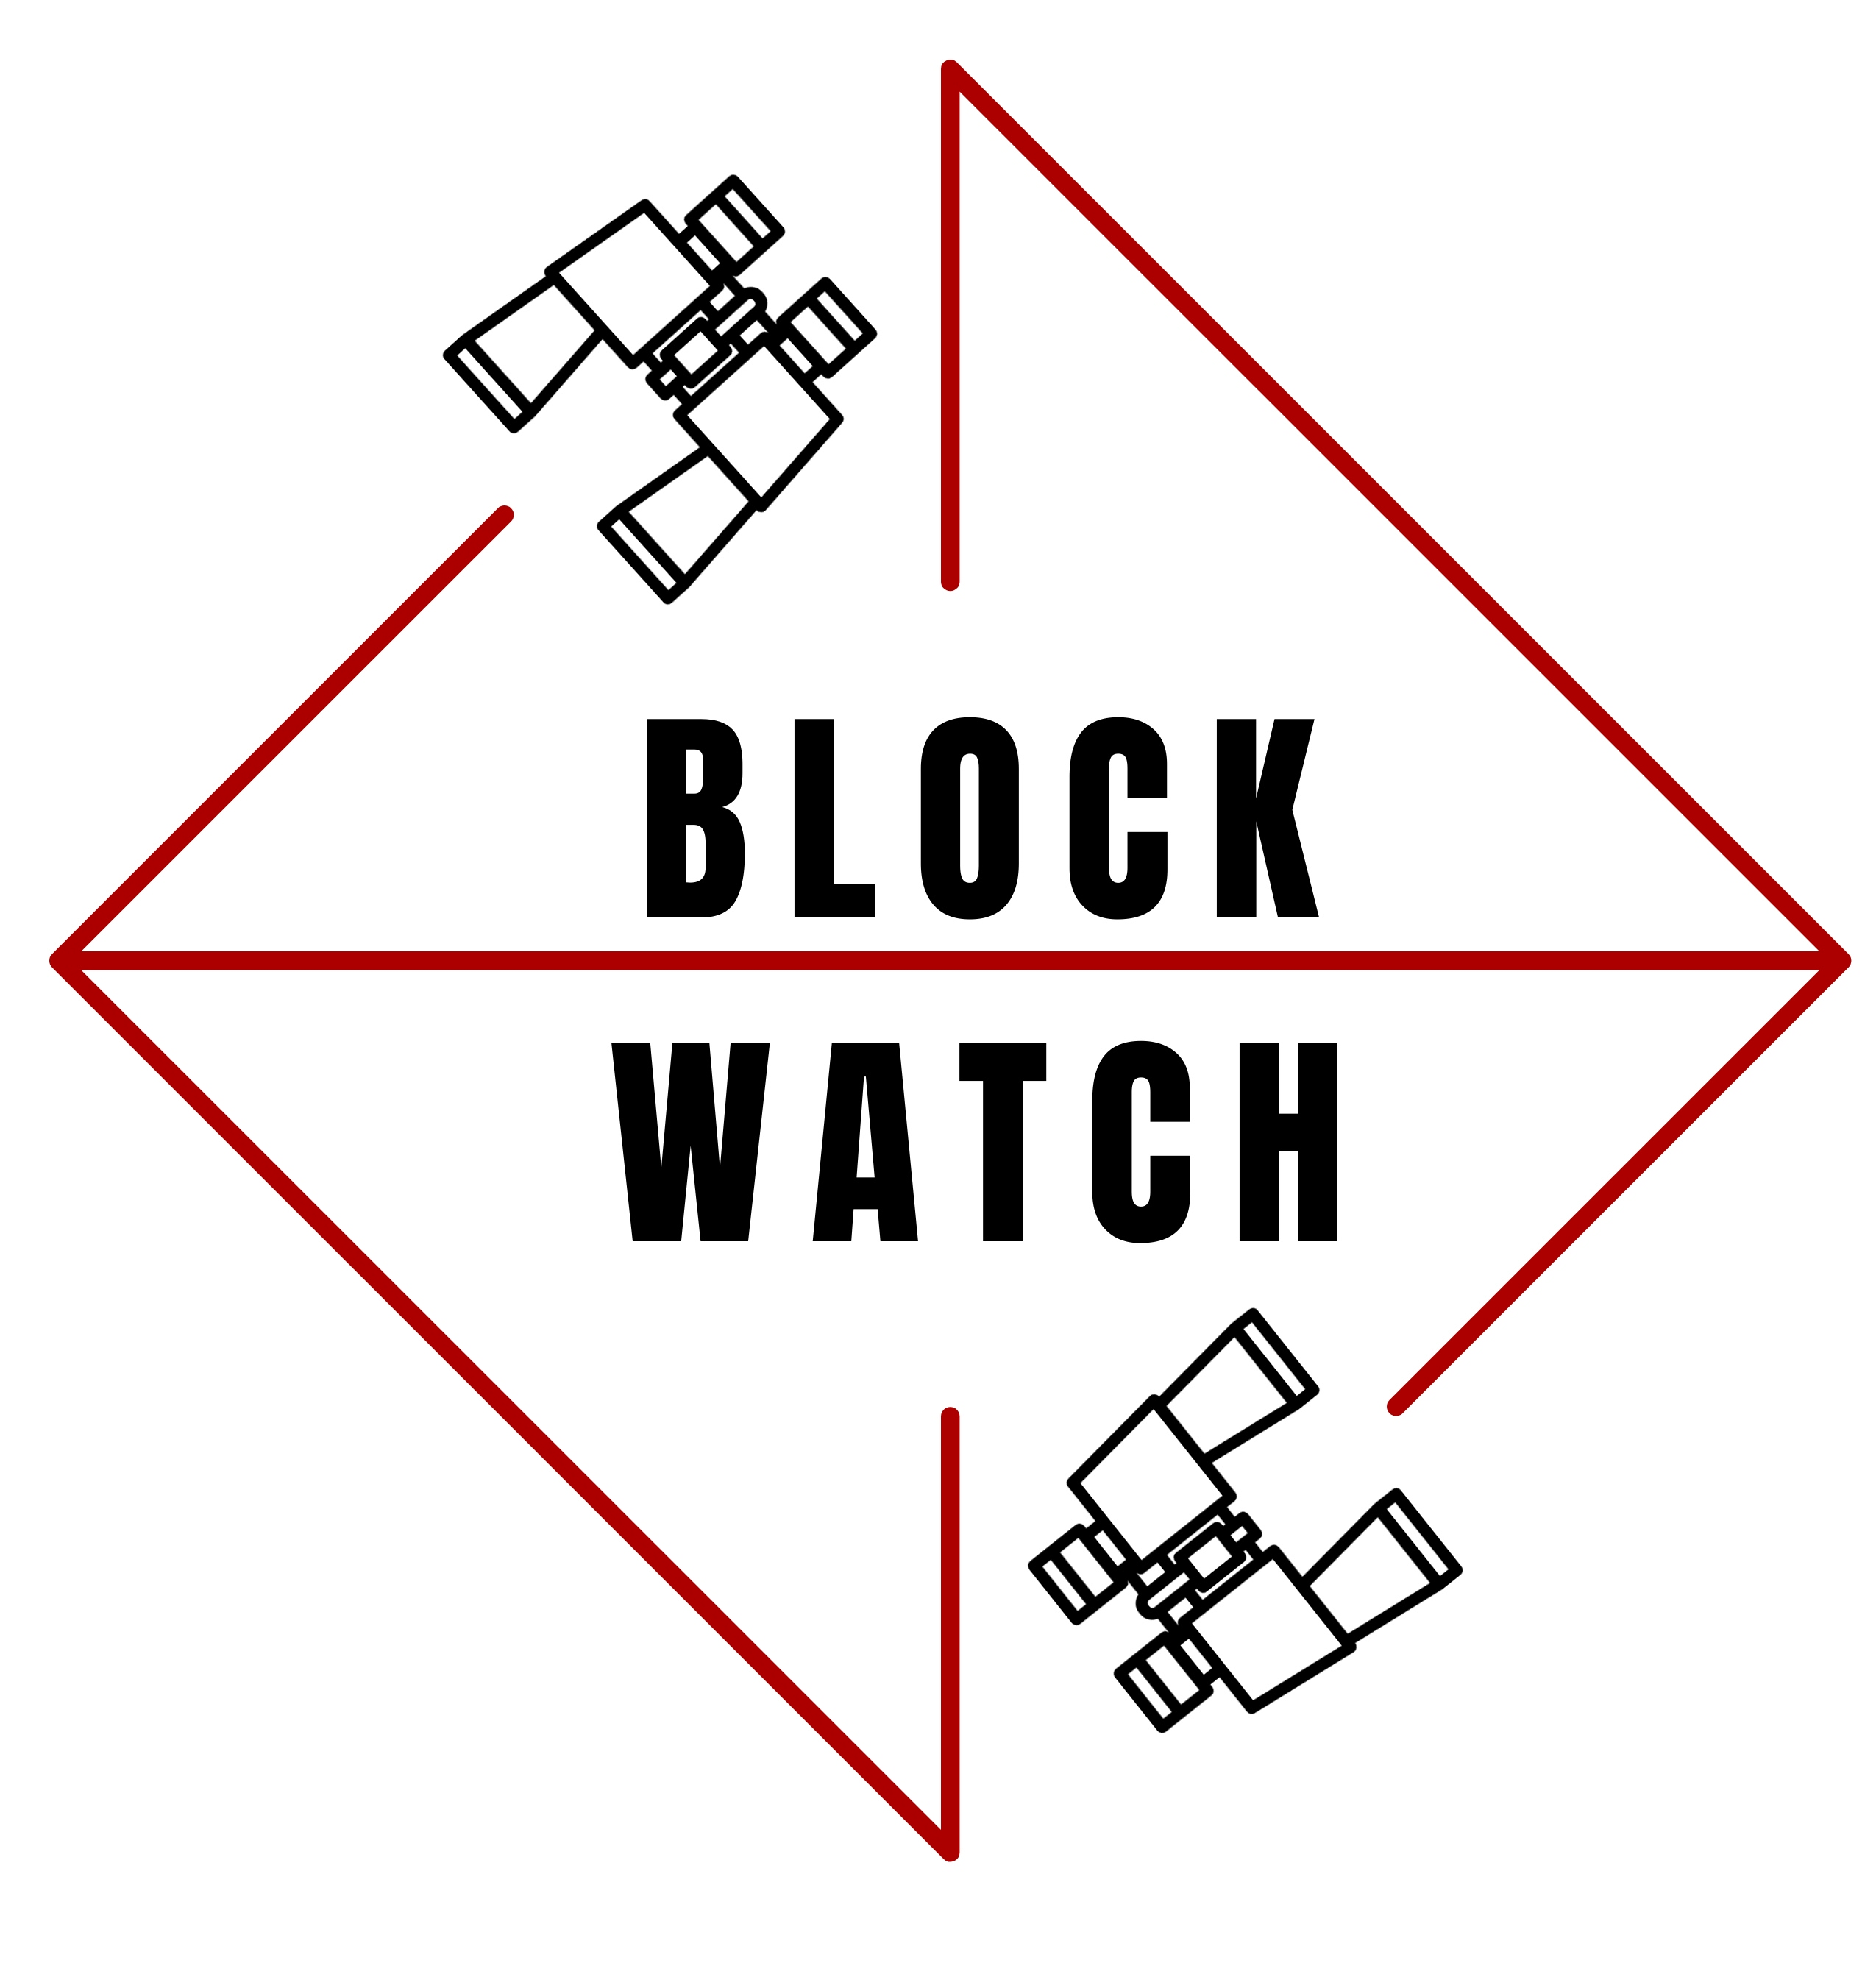 Block Watch: Season 2